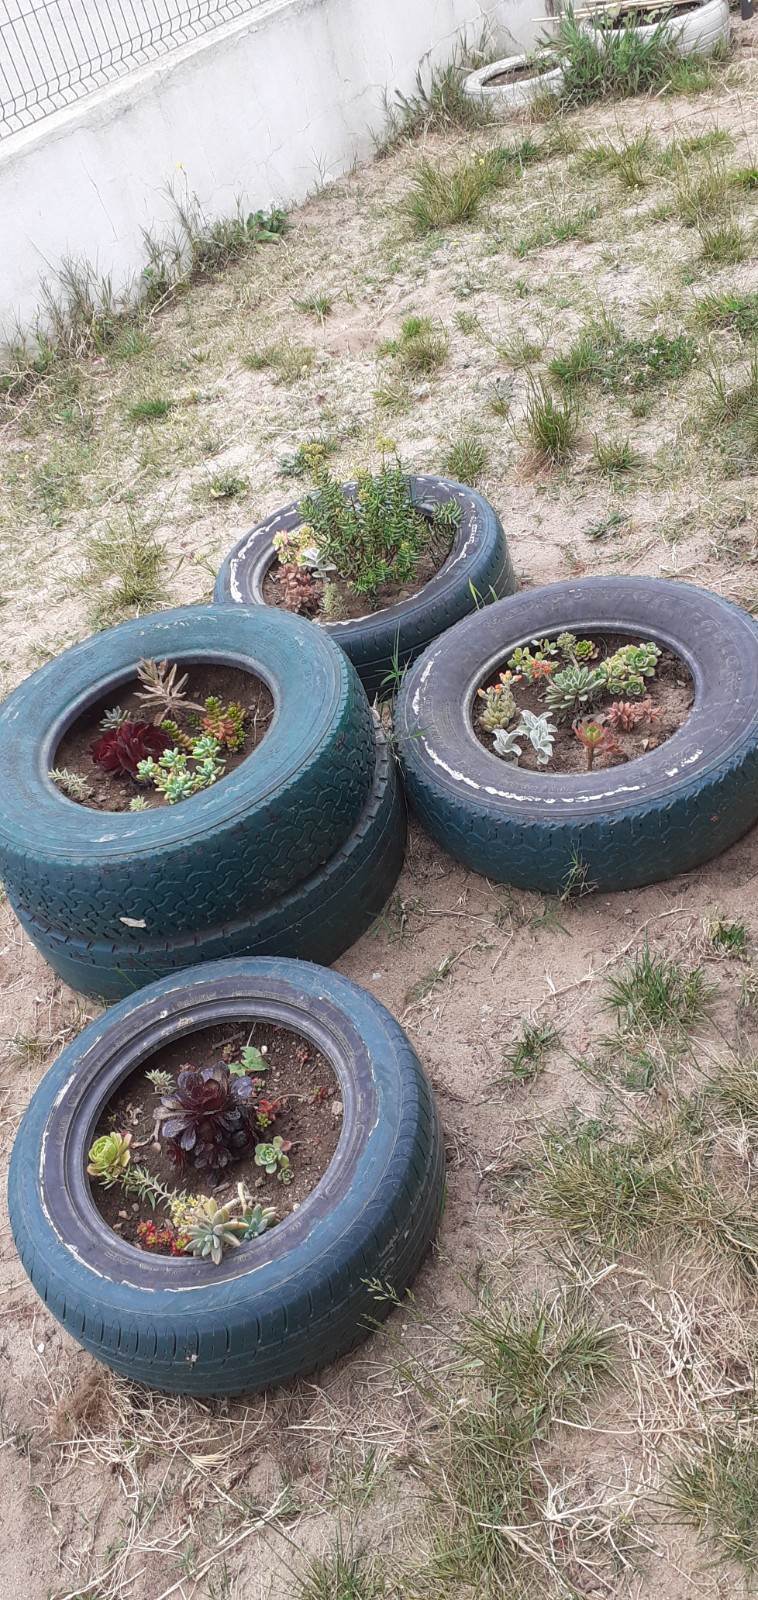 Jardim de Infância
Não sendo efetivamente uma horta...os pneus foram reutilizados para se fazer um MARAVILHOSO jardim de suculentas.